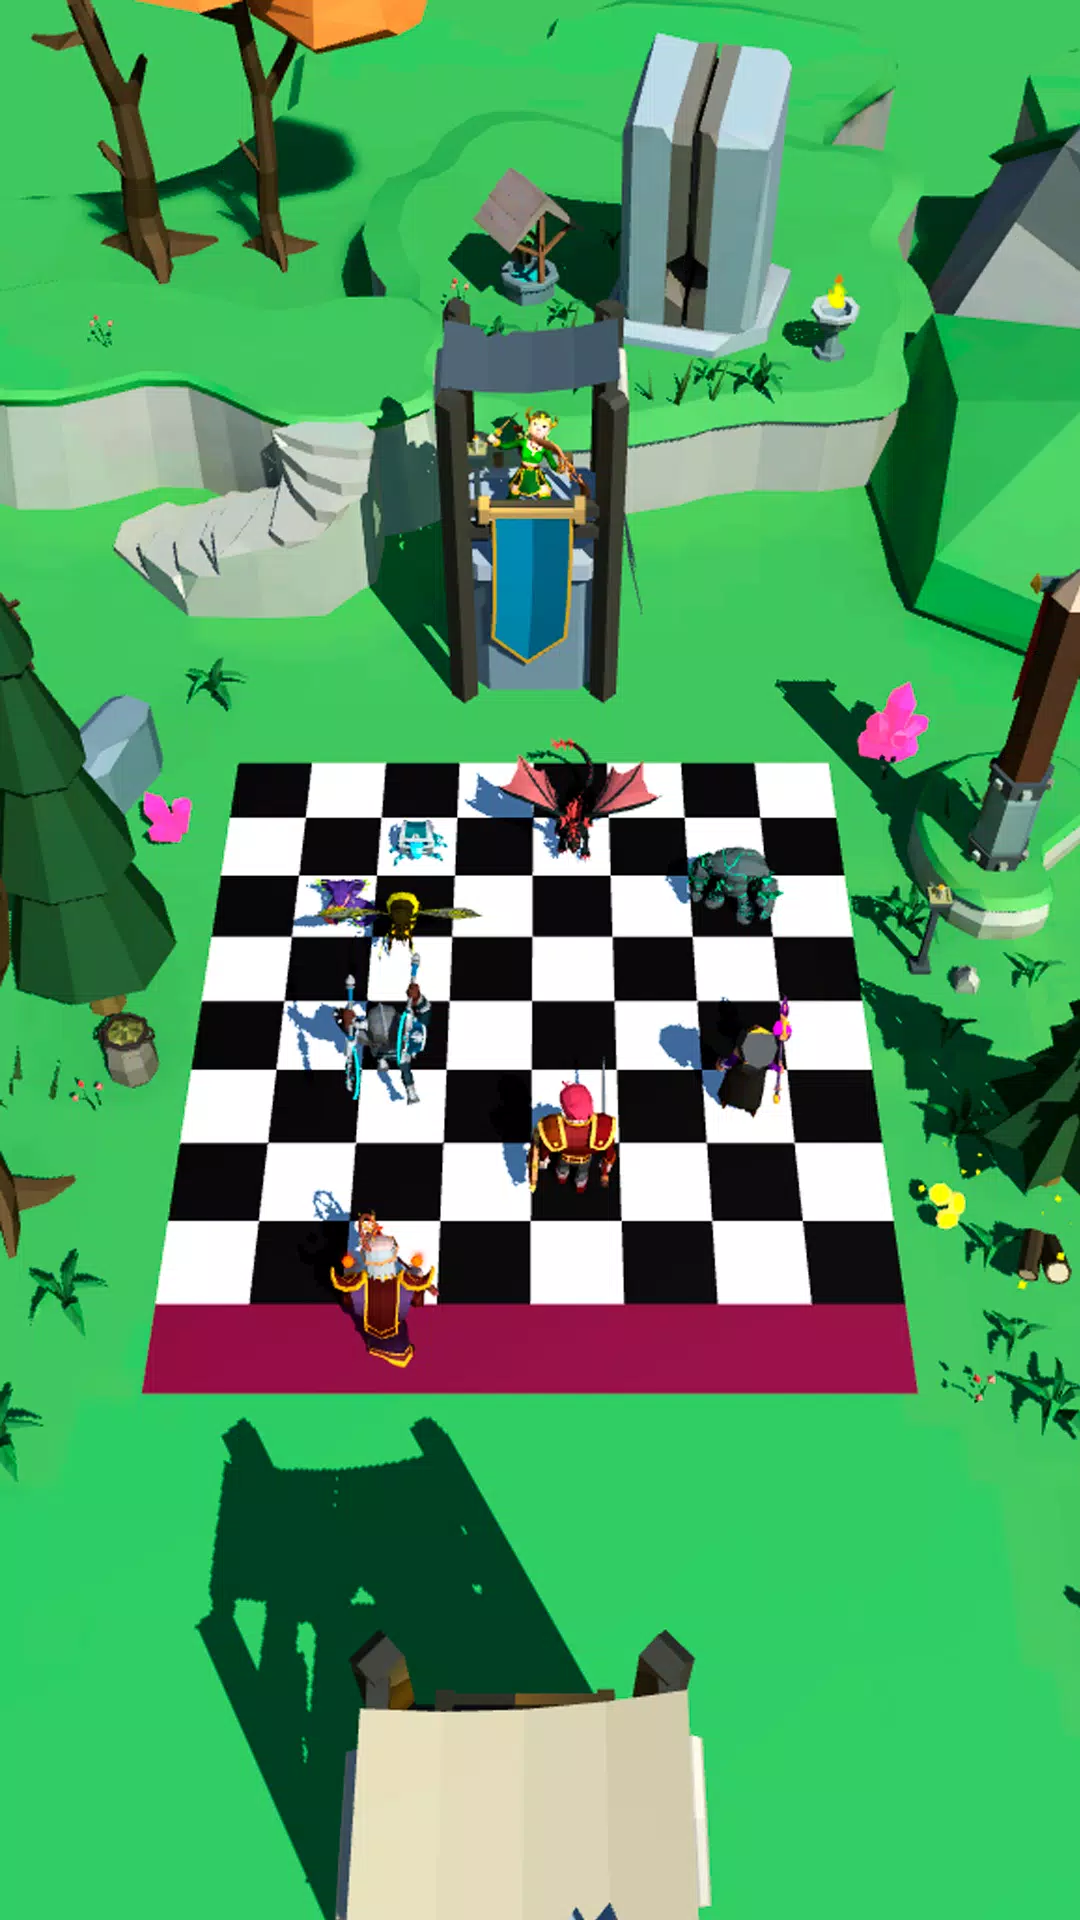 Auto Chess Mobile: versão para Android já está disponível para download -  Pichau Arena